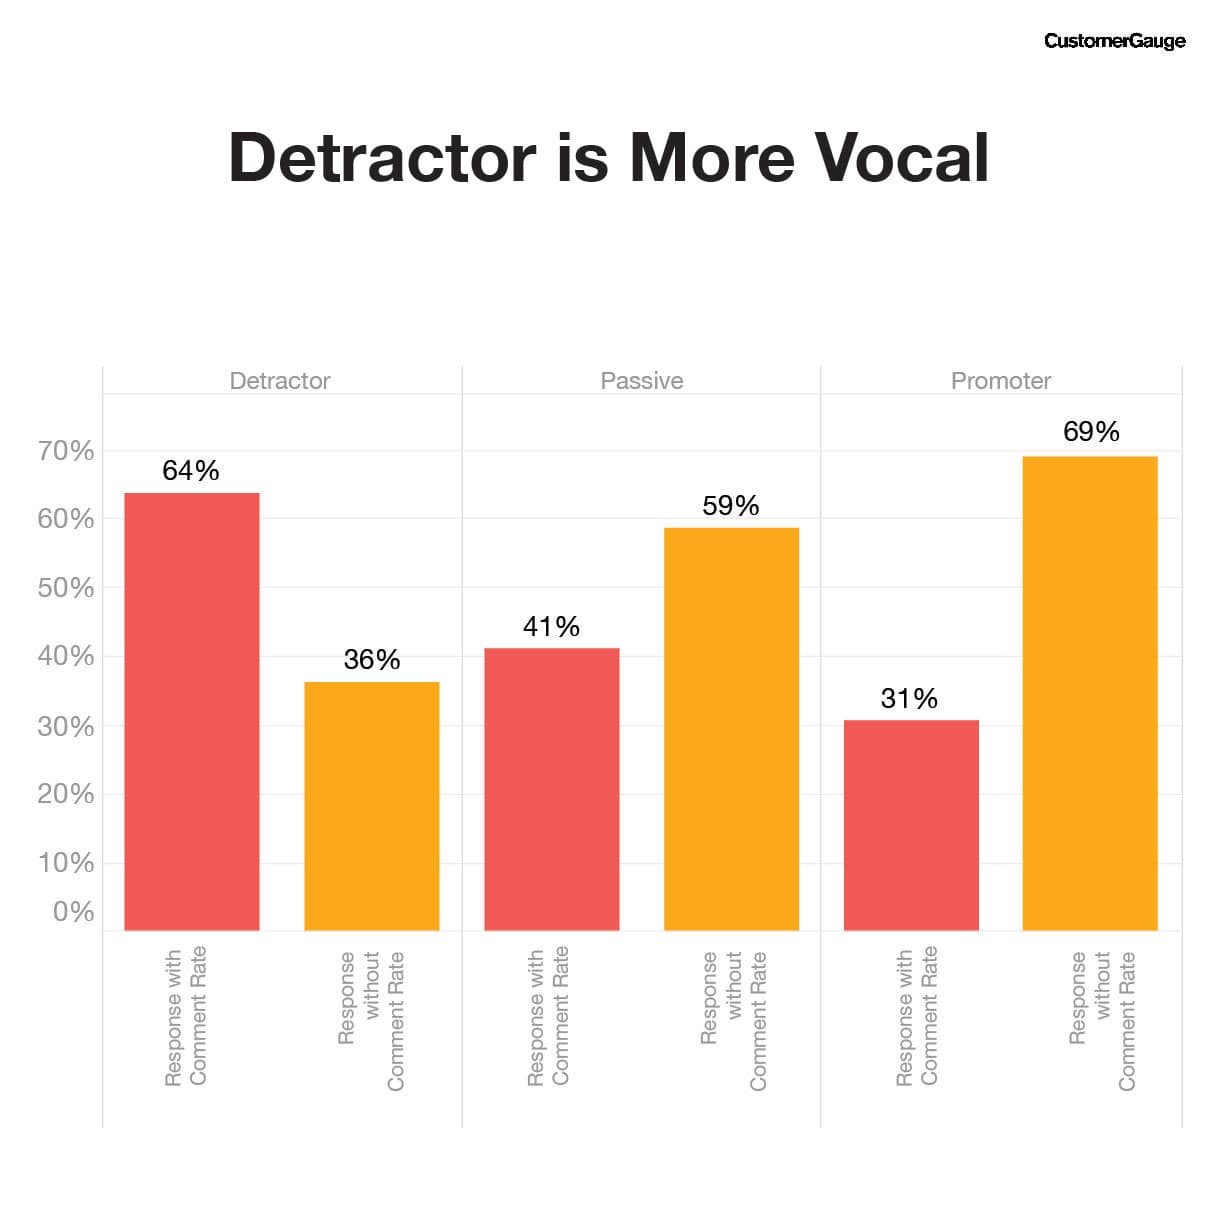 NPS Detractors are more vocal